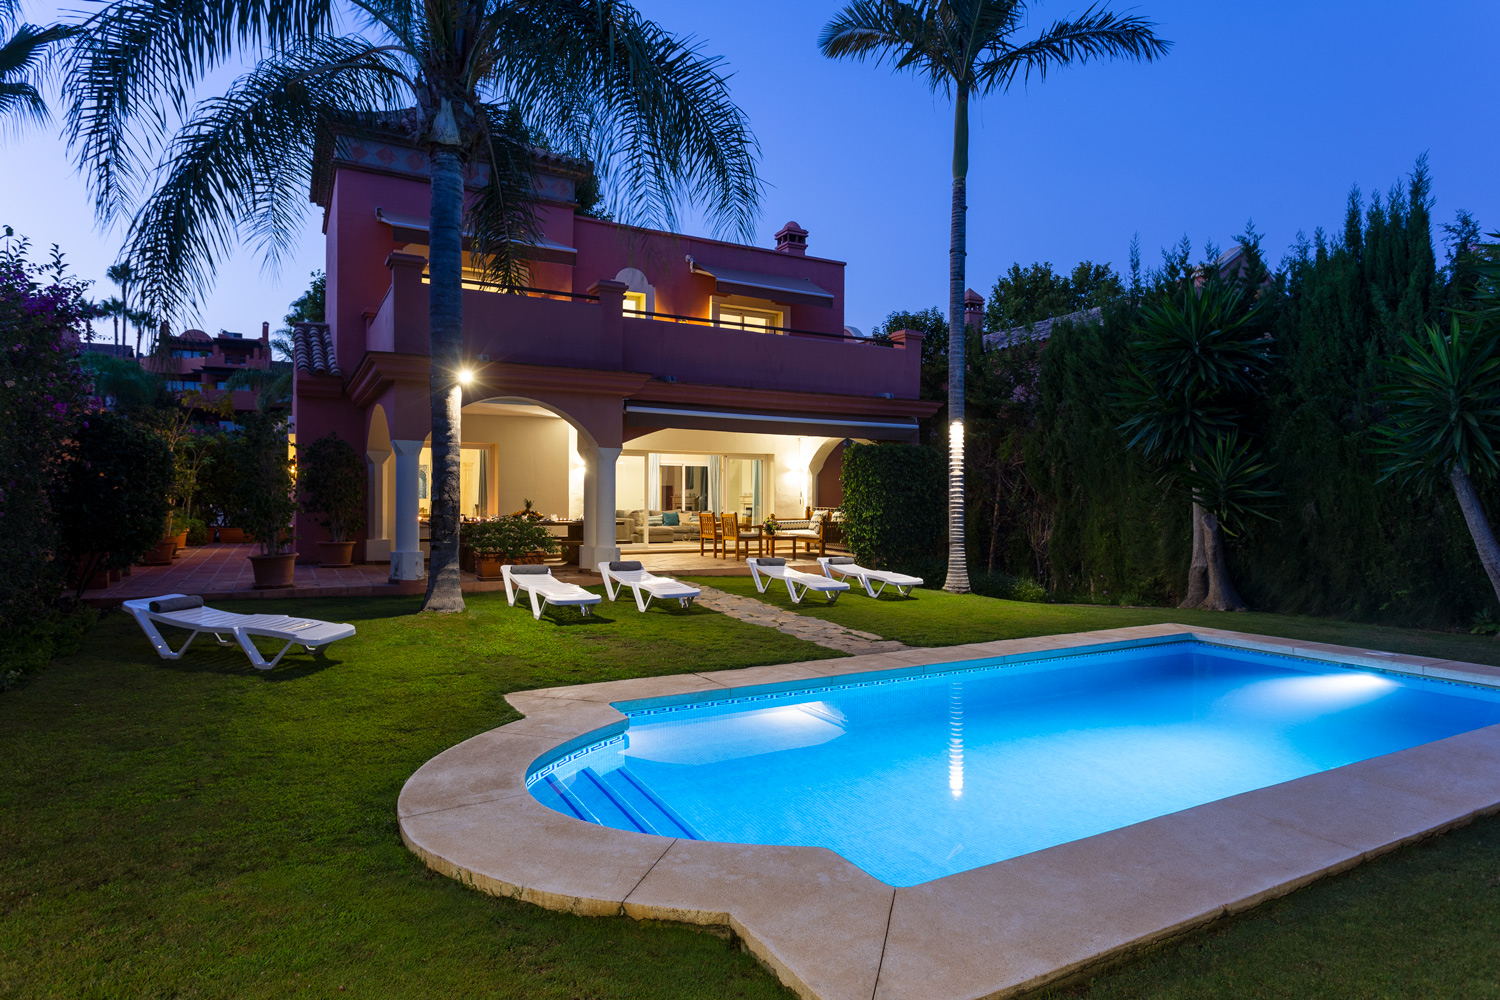 6 habitacions, wifi, NETFLIX, barbacoa, piscina climatitzada, sauna. A poca distància a peu de Puerto Banús.